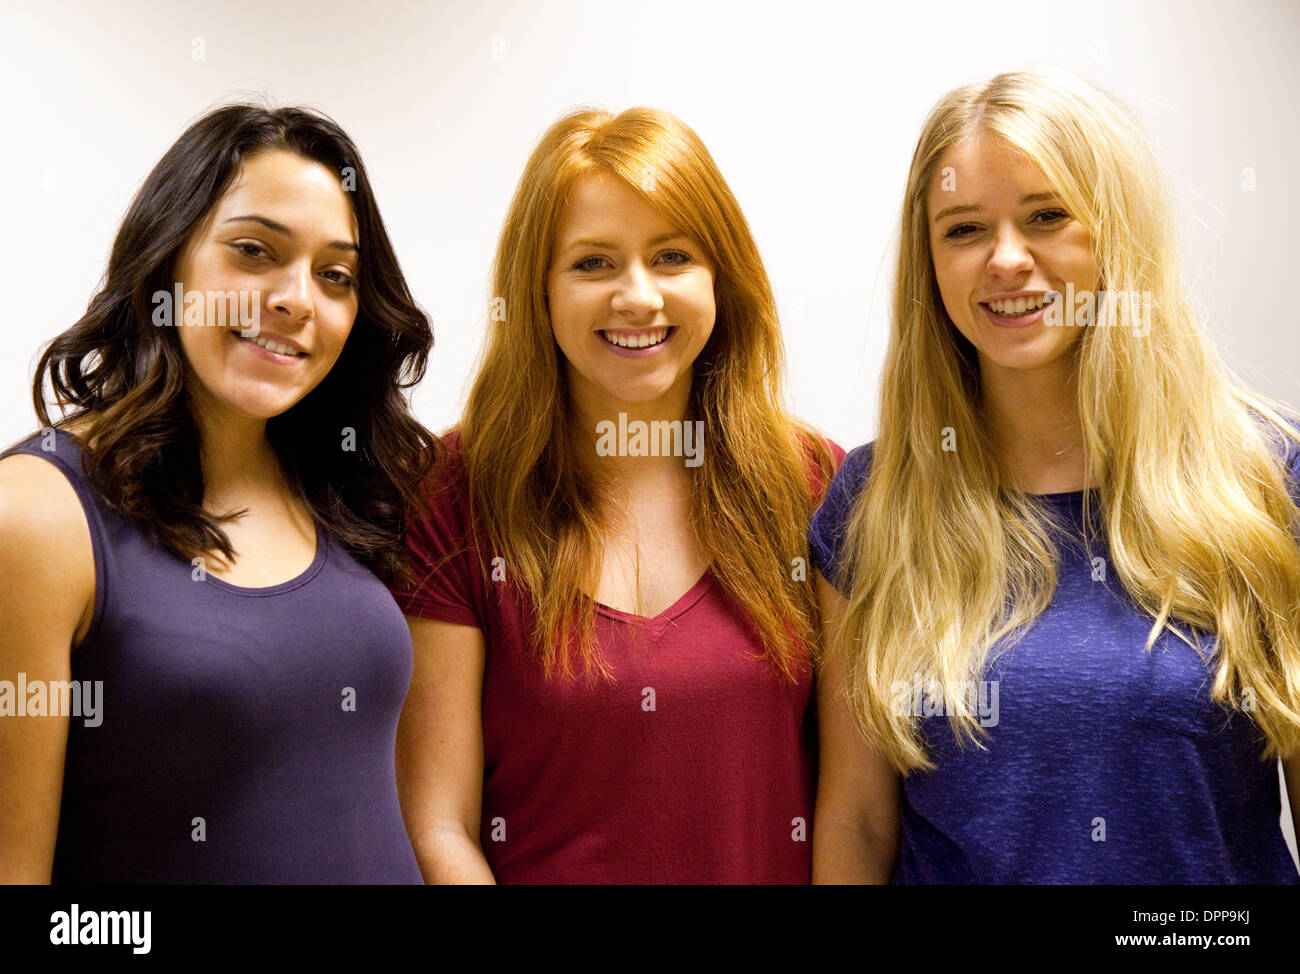 Brünette, Rothaarige und blonde blonde junge kaukasischen Frauen zeigen Unterschied in Haar Farbe und Haut färben, UK Stockfoto